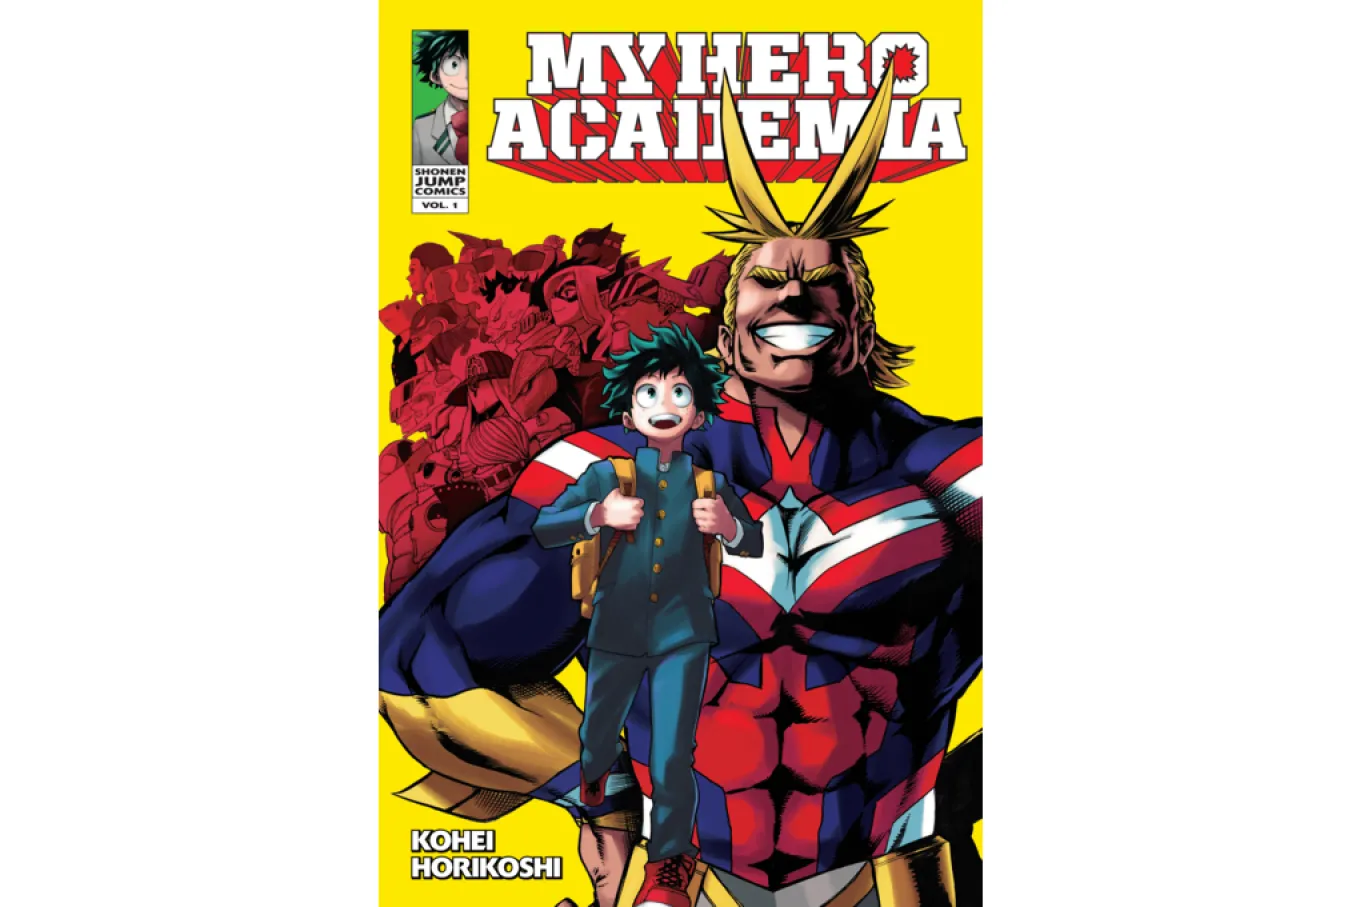 My Hero Academia cover